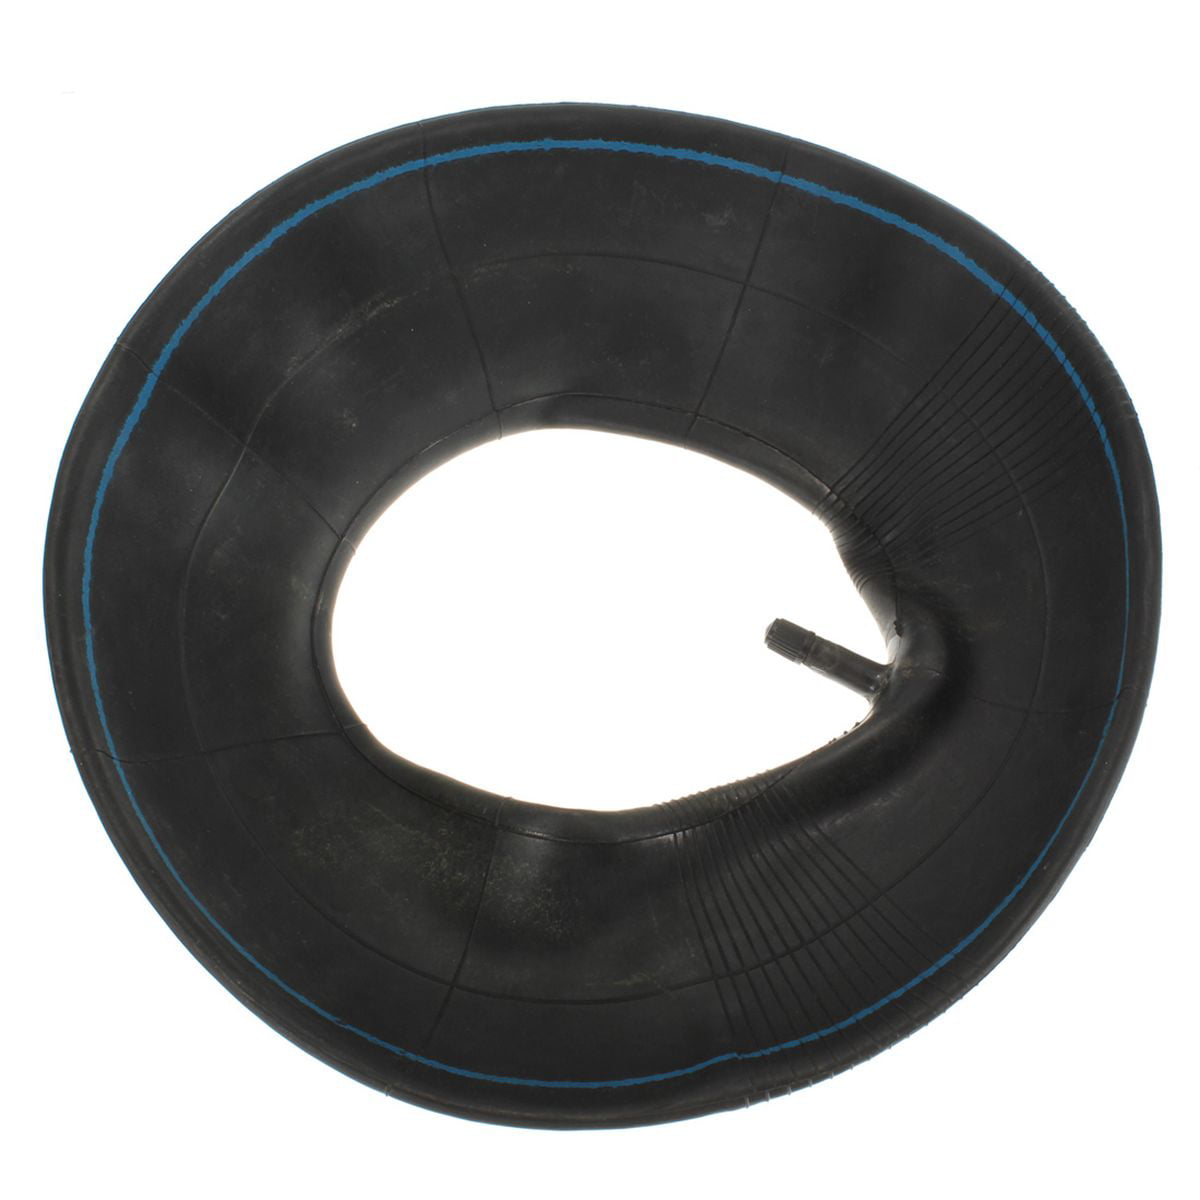 Wadoy Inner Tube Tire 3.50/4.00-6 350/400-6 Inner Tube Wheelbarrow Rubber Valve 6 TR13 2 Pack with Gloves Set 